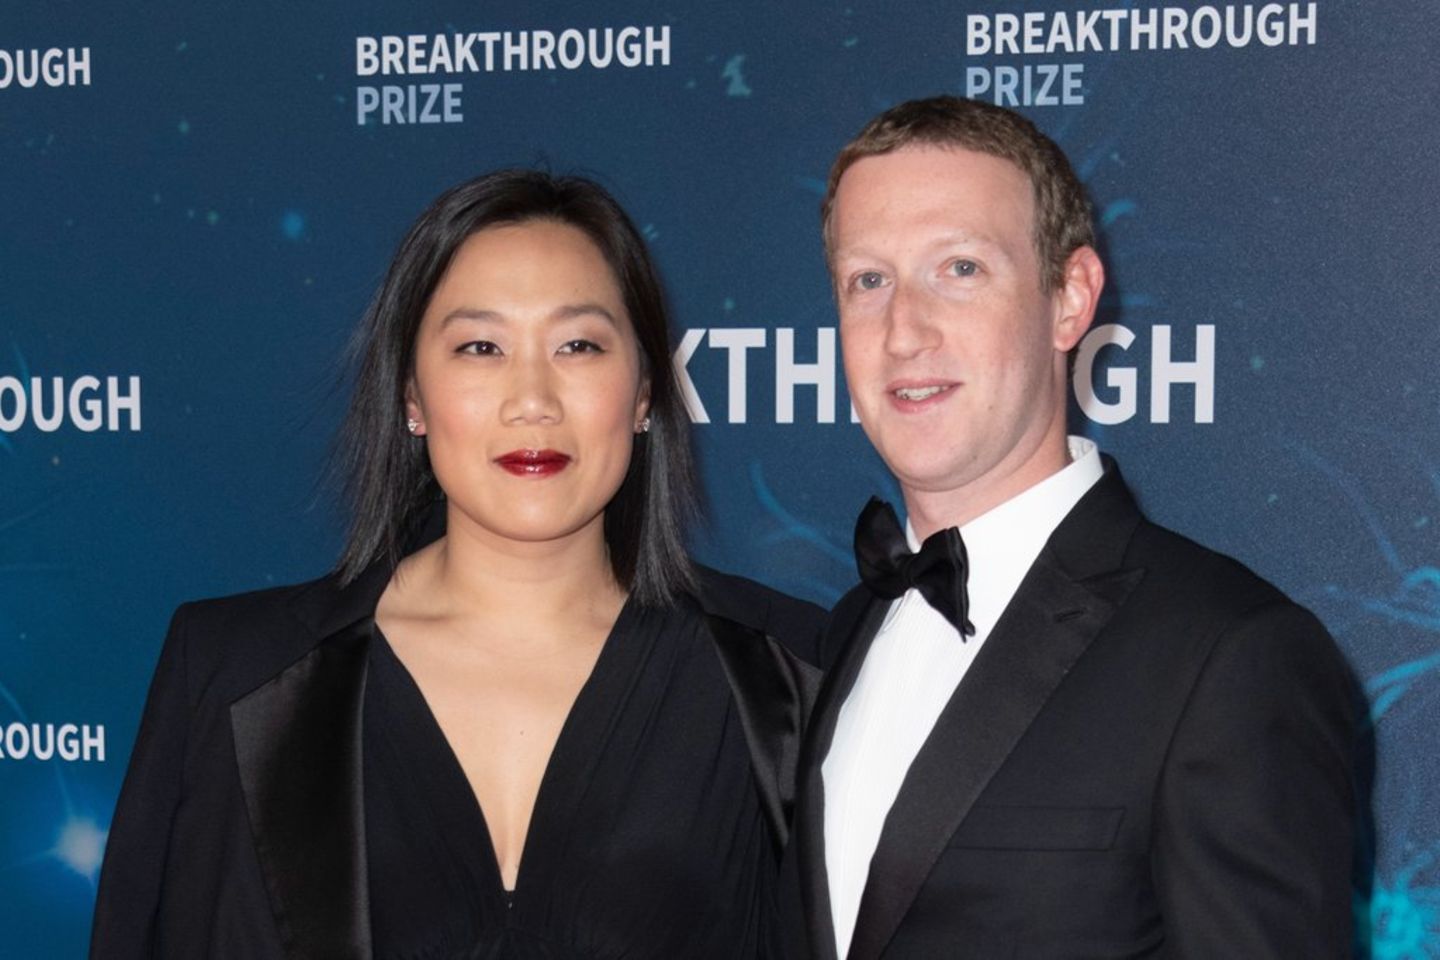 Ganz natürlich lächeln... Mark Zuckerberg und seine Ehefrau während eines Events.